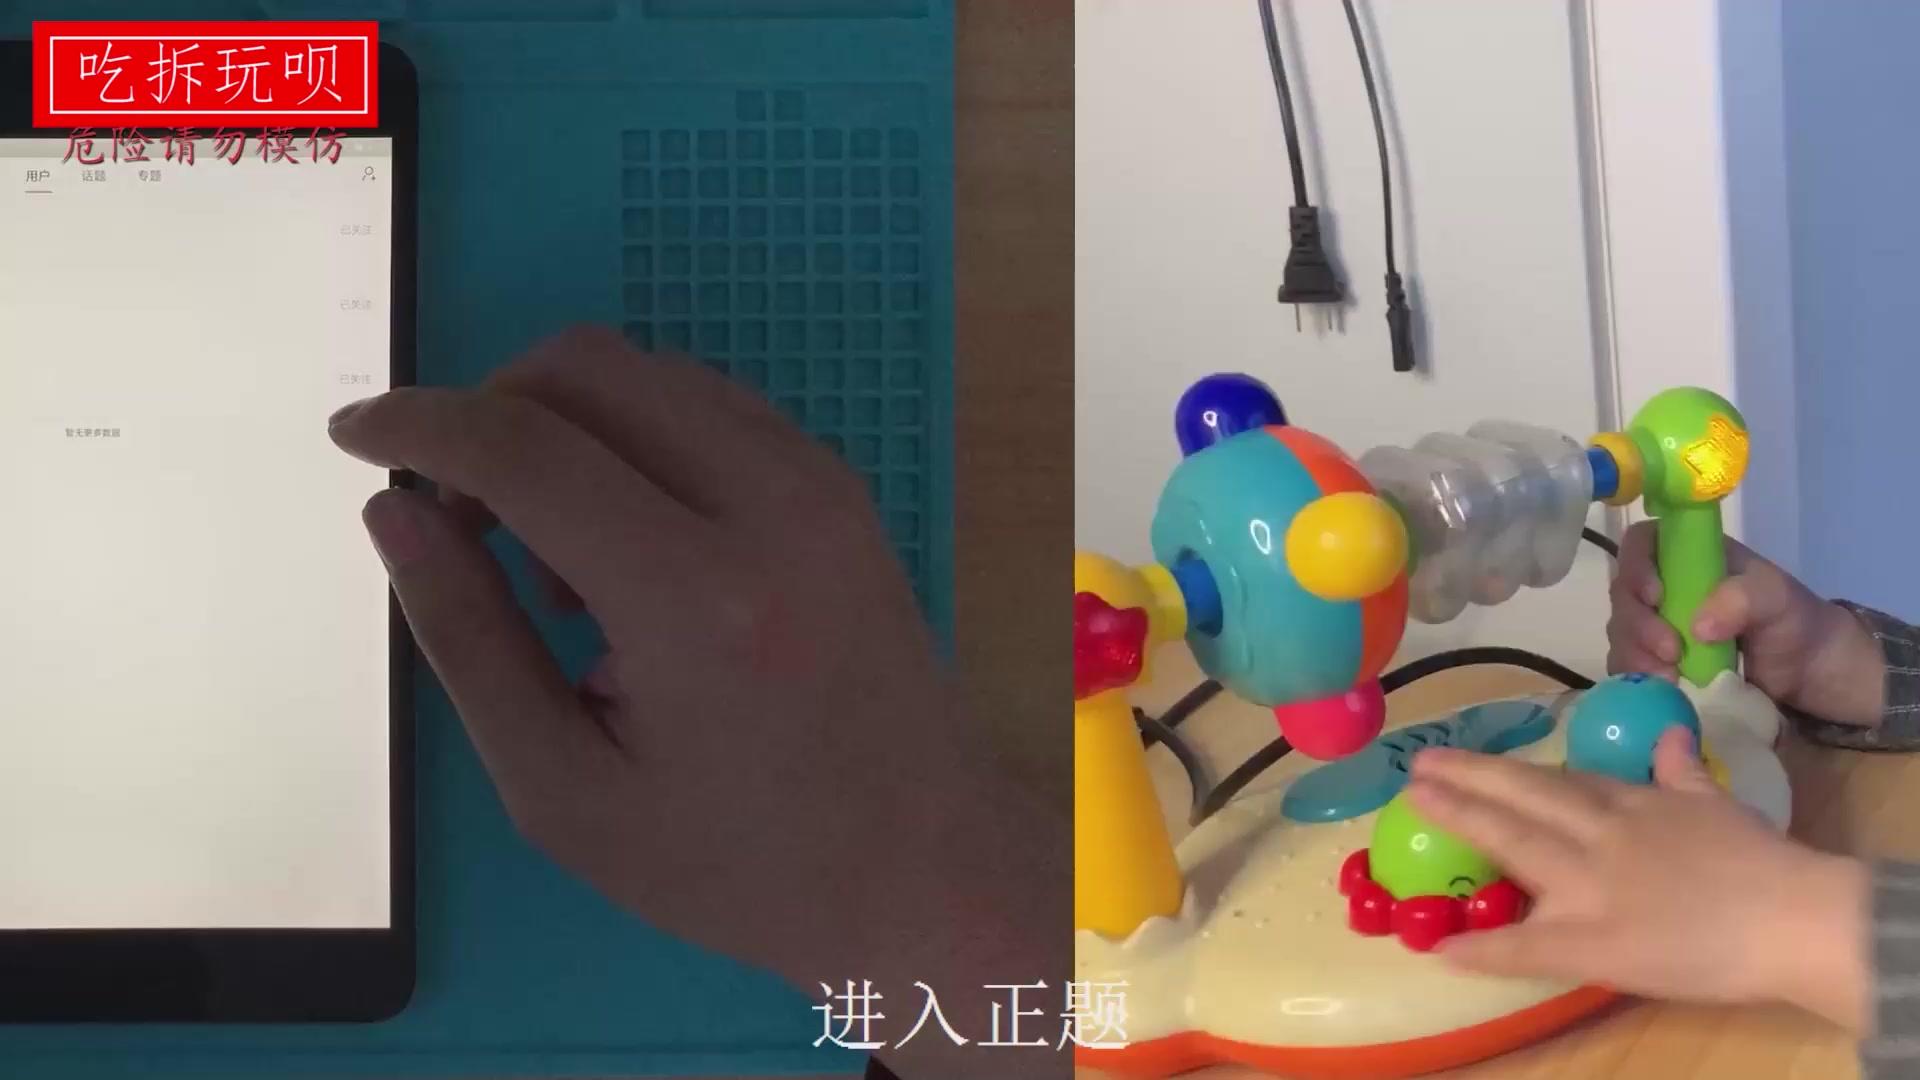 平板電腦改用筆記本電腦的18650電芯 一小時(shí)僅充進(jìn)15%電量 片尾修好兒子玩具